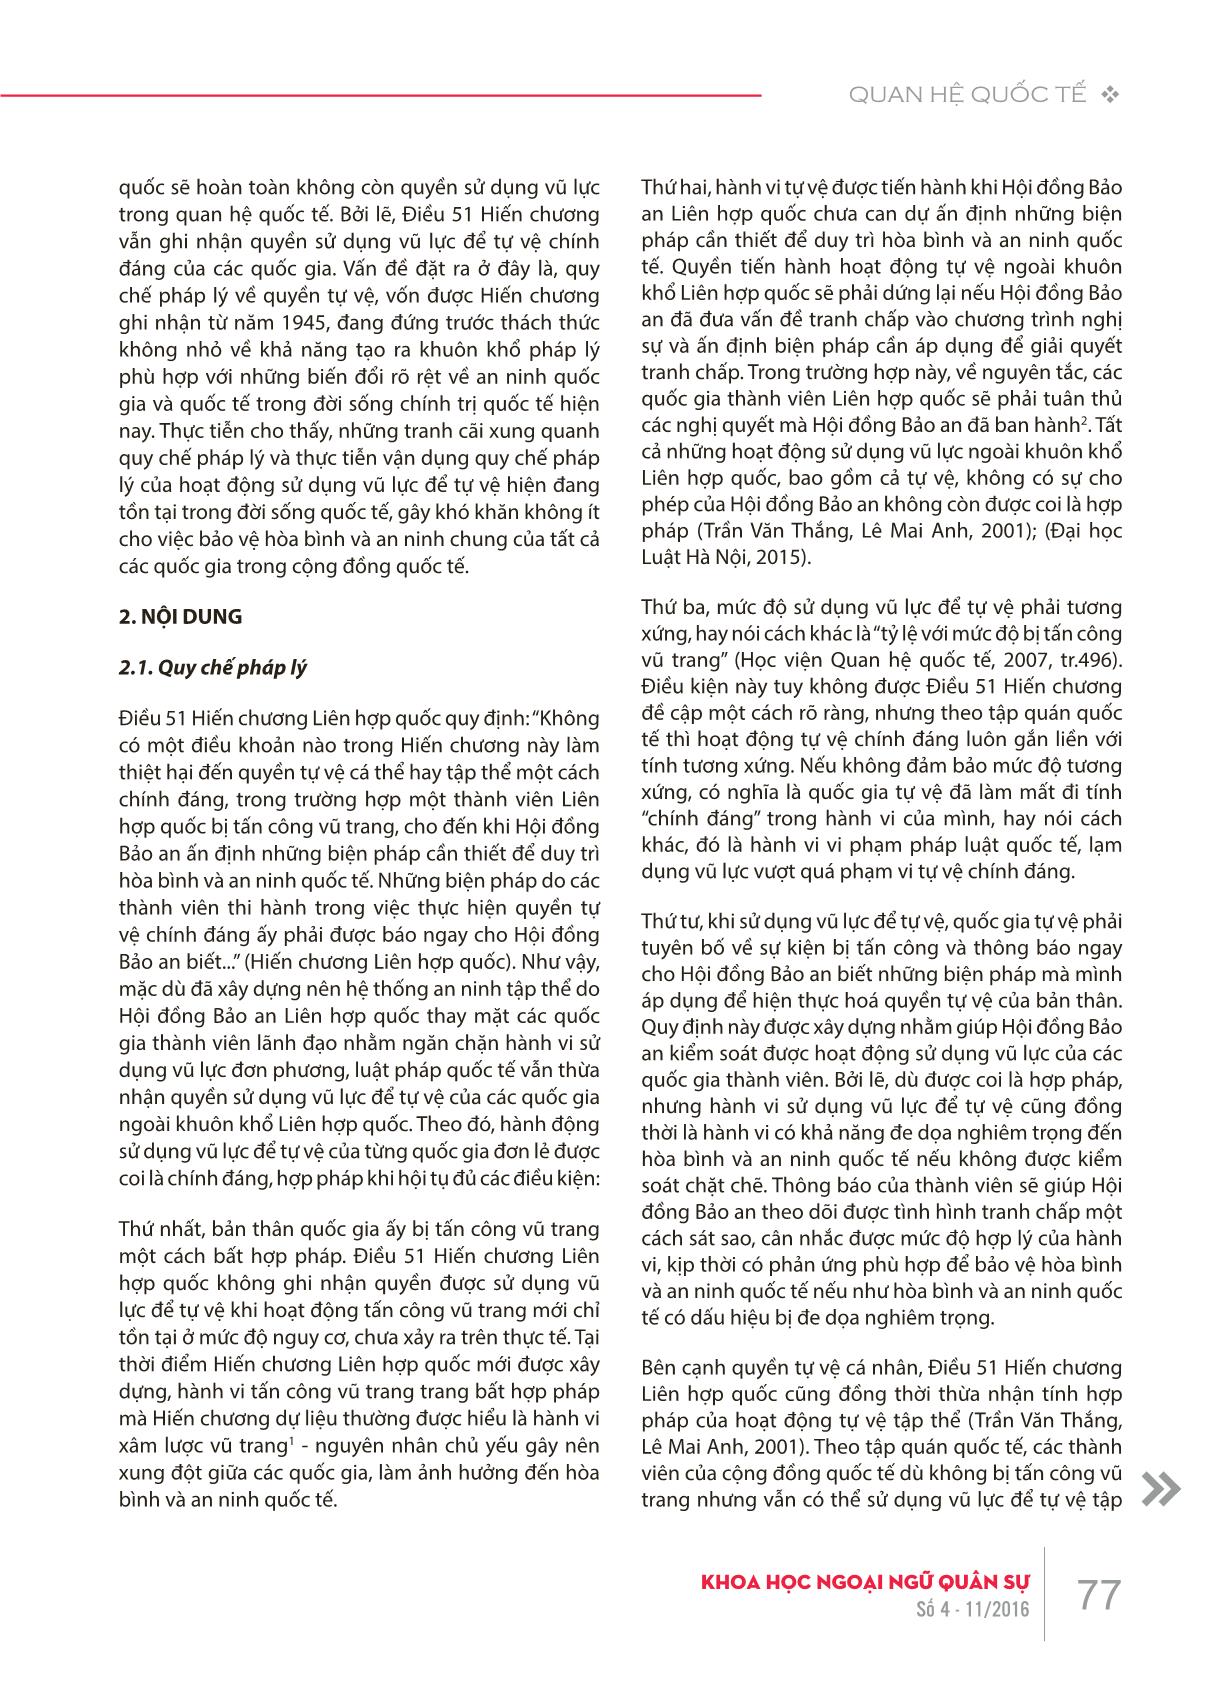 Tìm hiểu nghĩa gốc và hàm ý văn hóa của chữ “hảo” ( 好) trong tiếng Hán trang 5